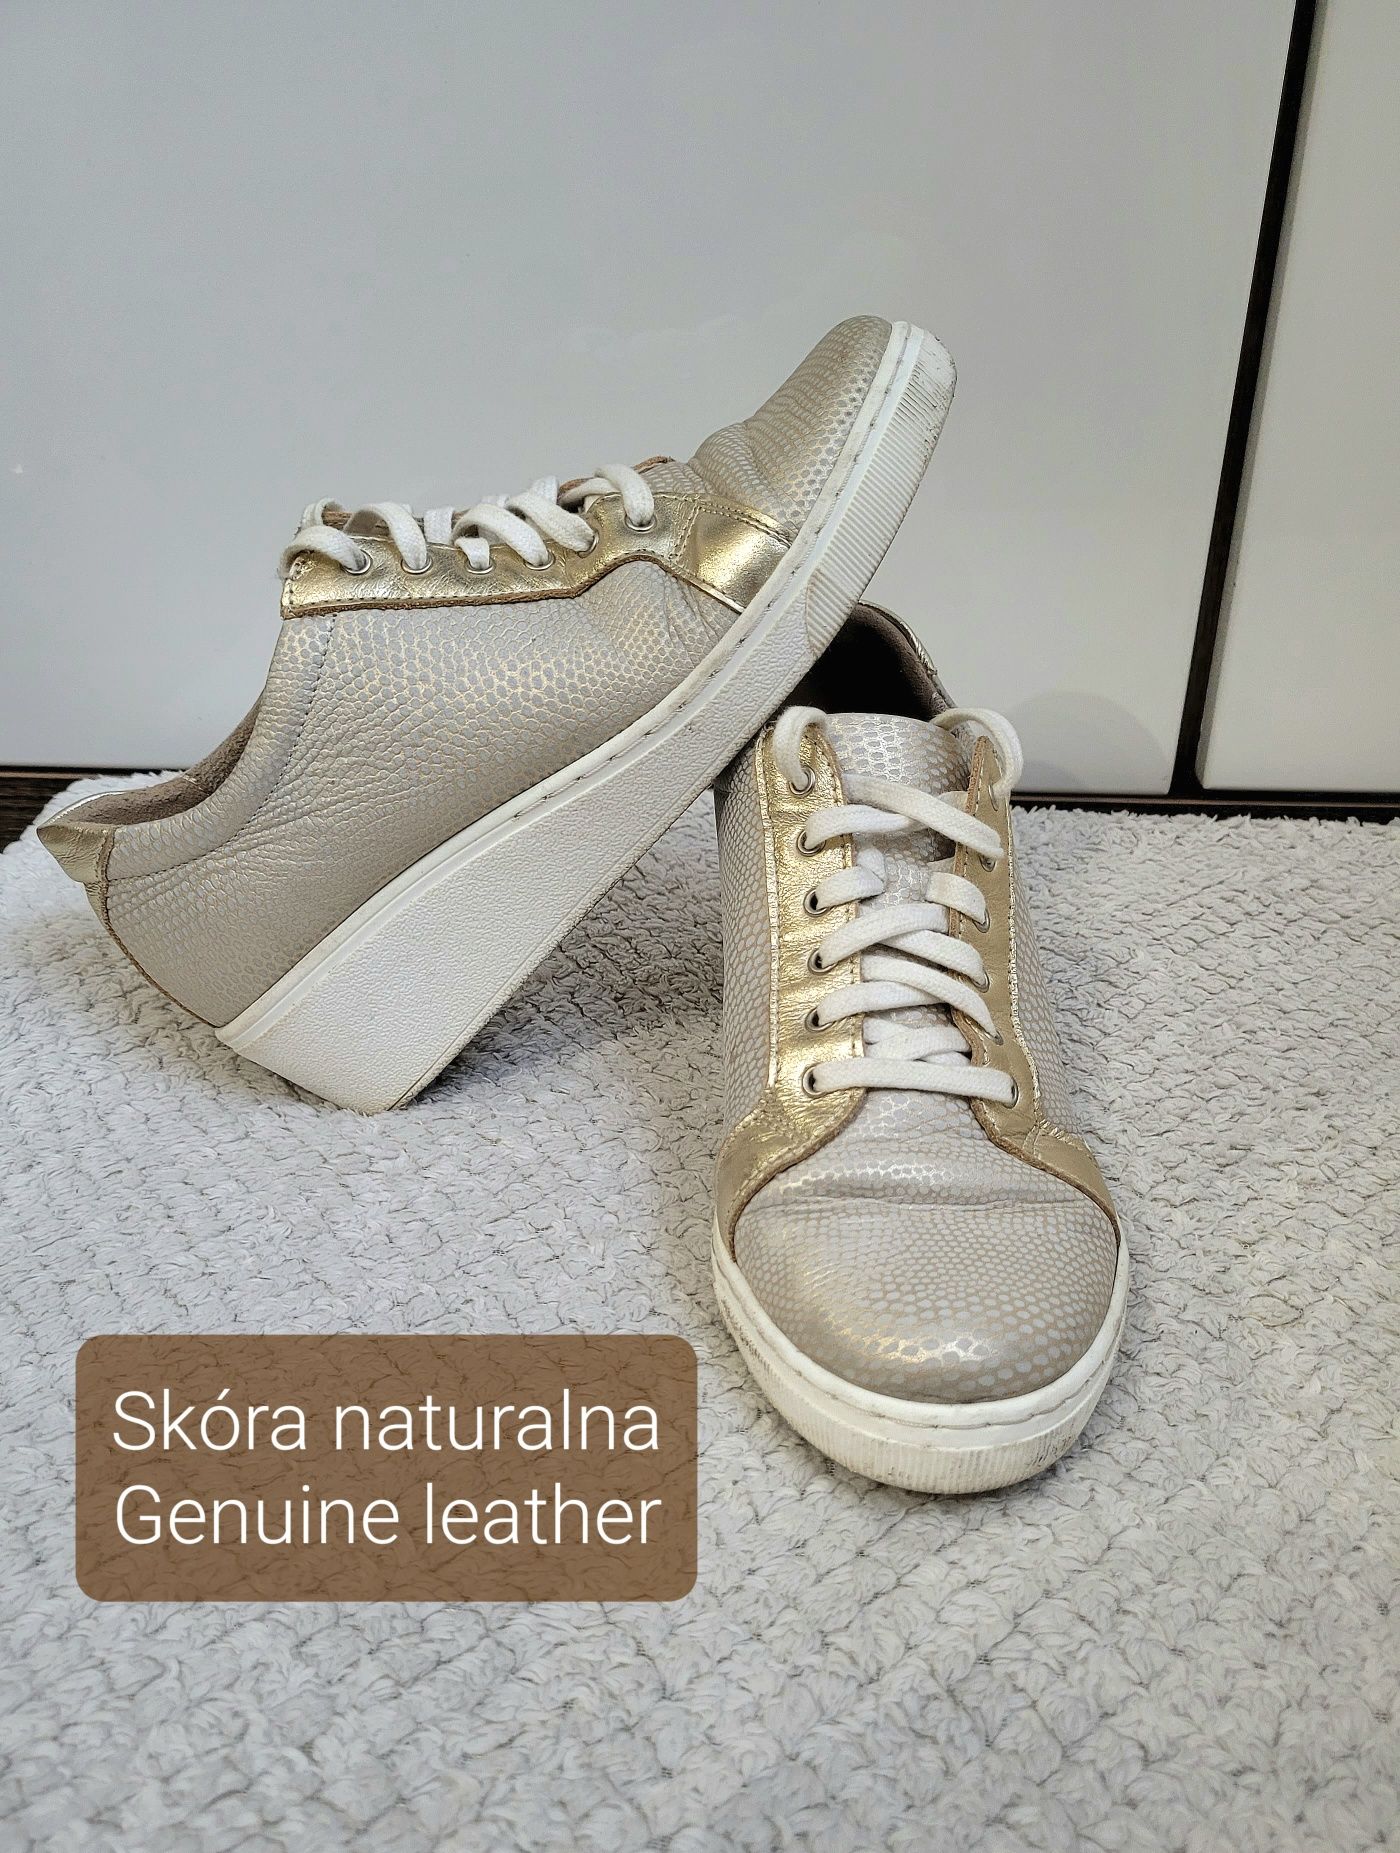 Skóra naturalna r. 38 adidasy półbuty sneakersy koturna złote srebrne